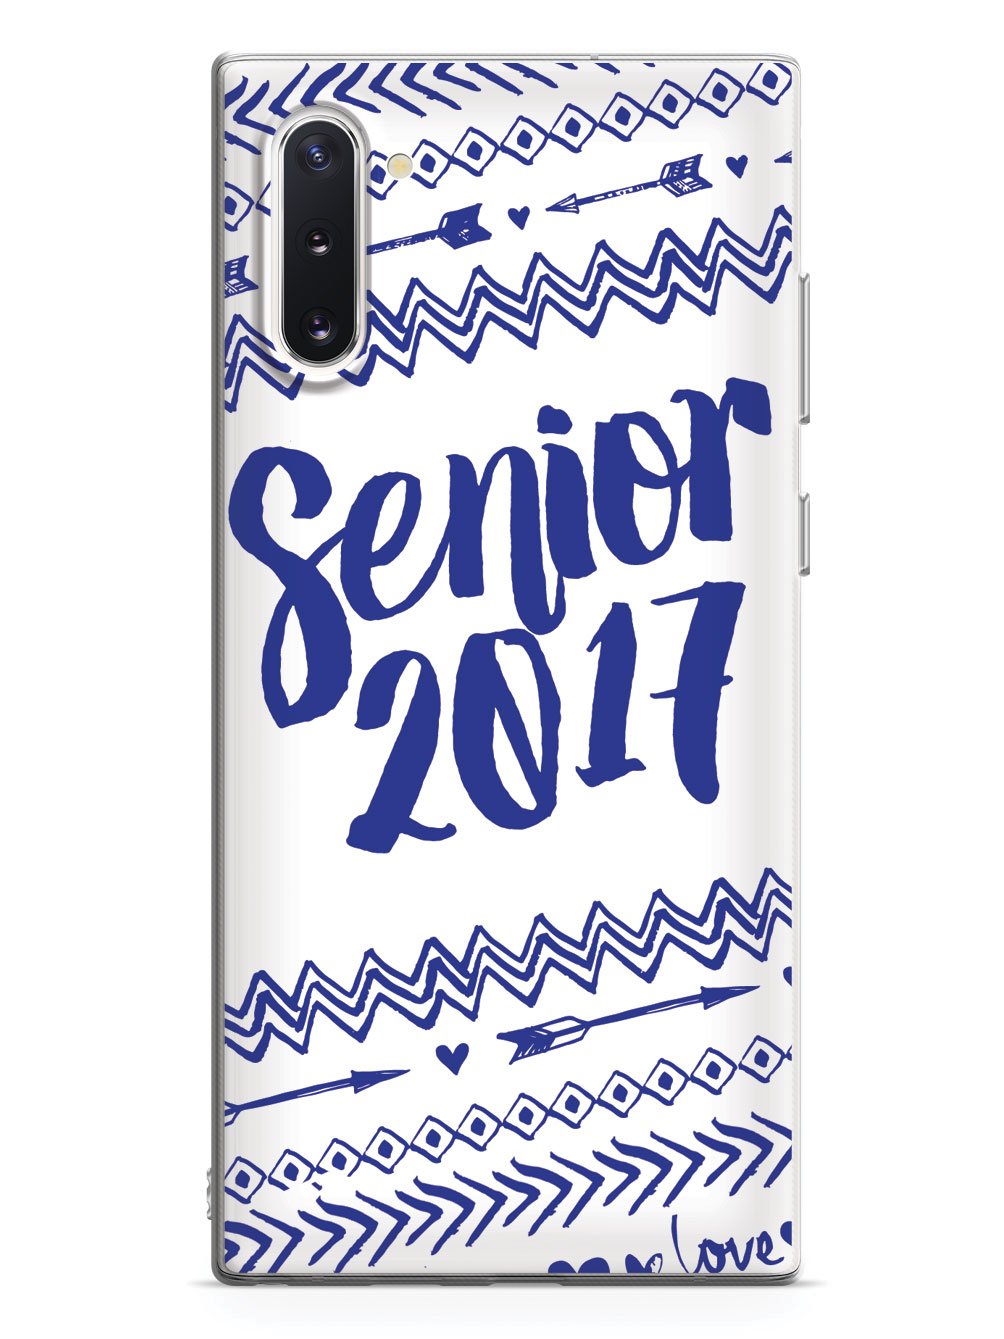 Senior 2017 - Blue Case - pipercleo.com